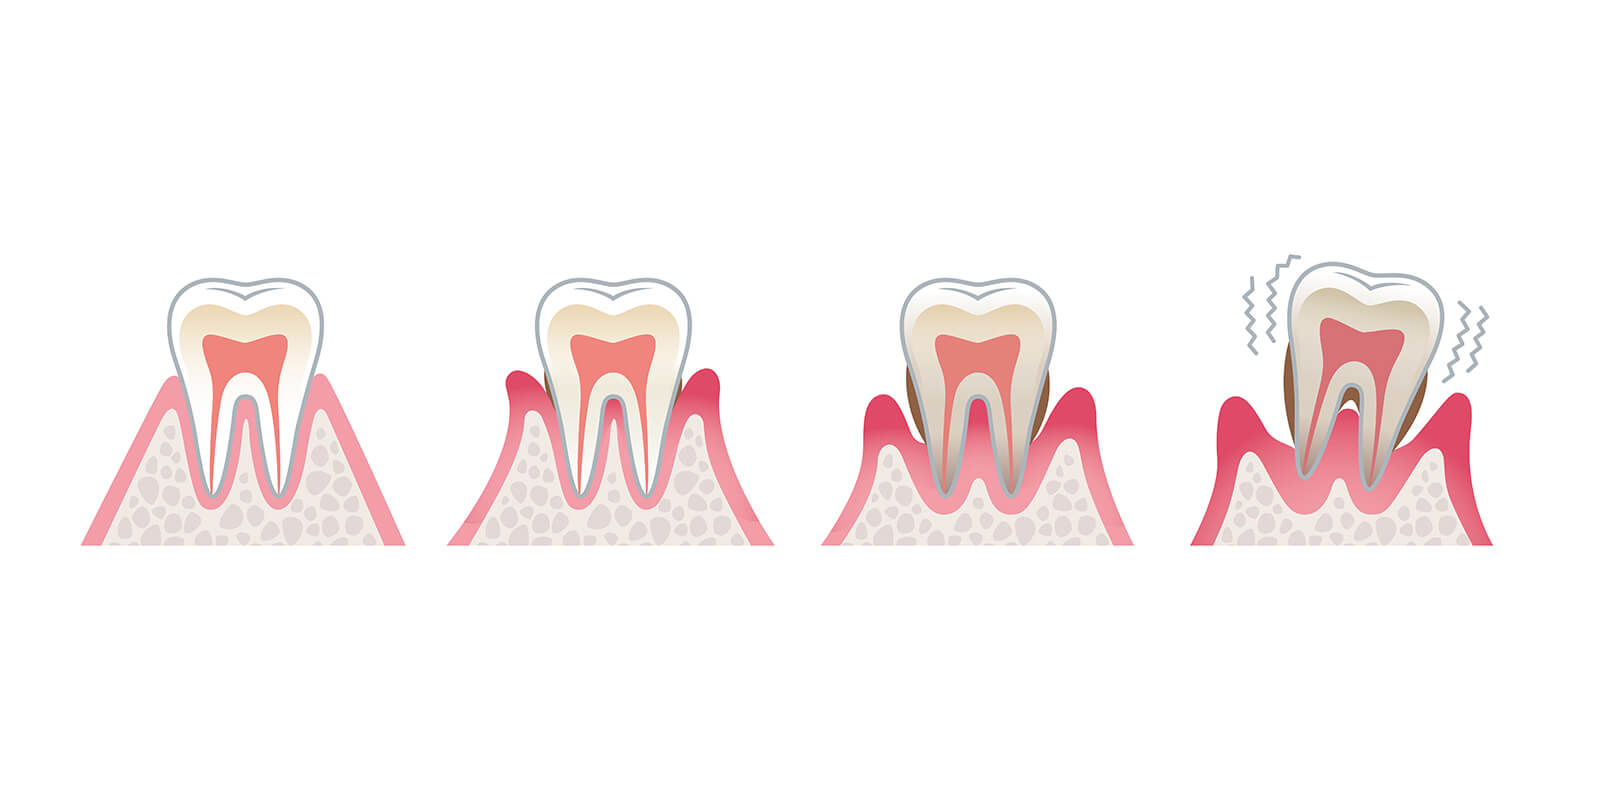 歯周病症状の段階について